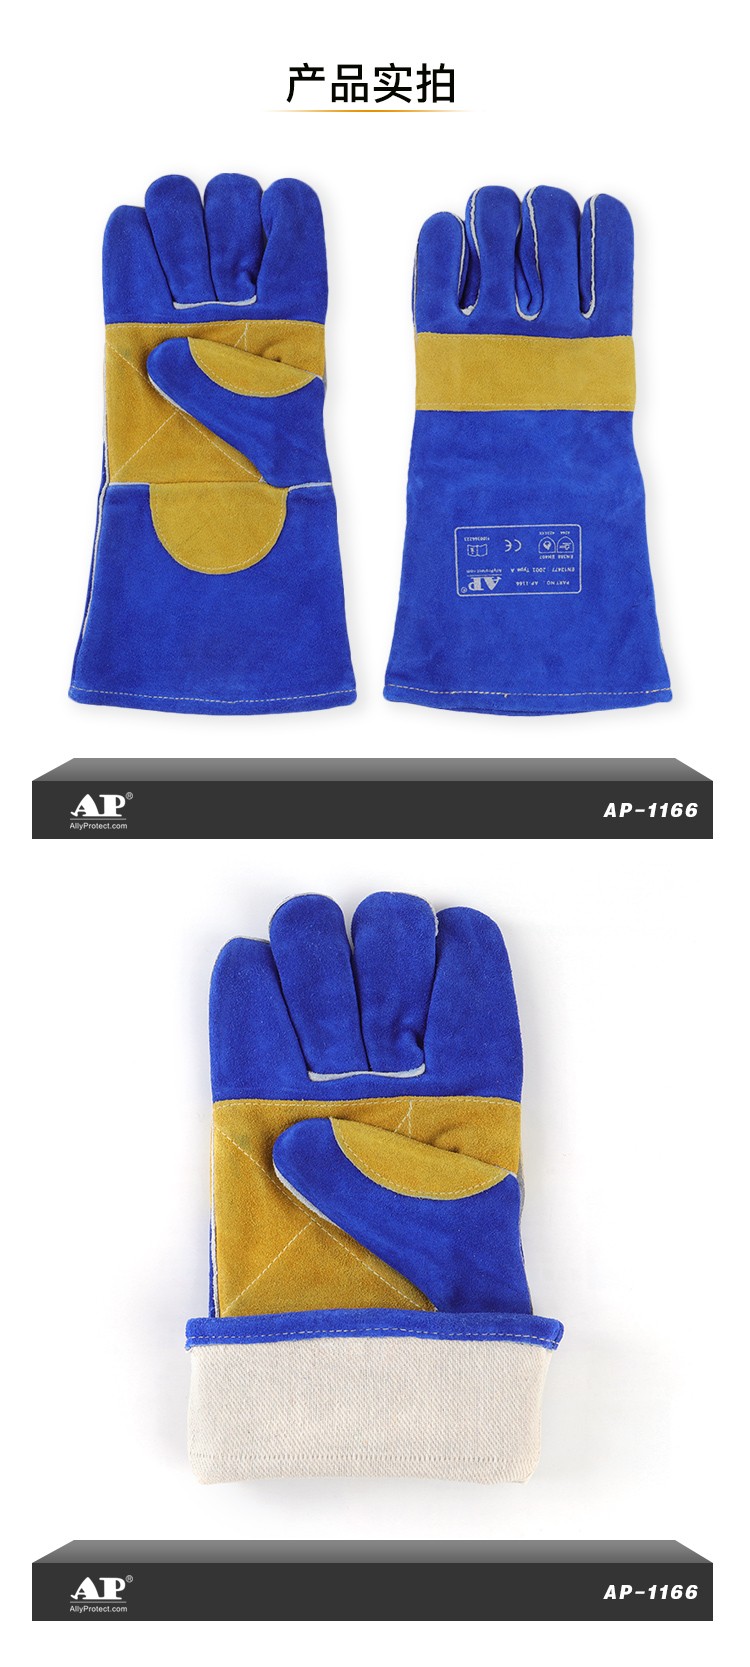 友盟AP-1166彩蓝色牛二层皮电焊手套图片4